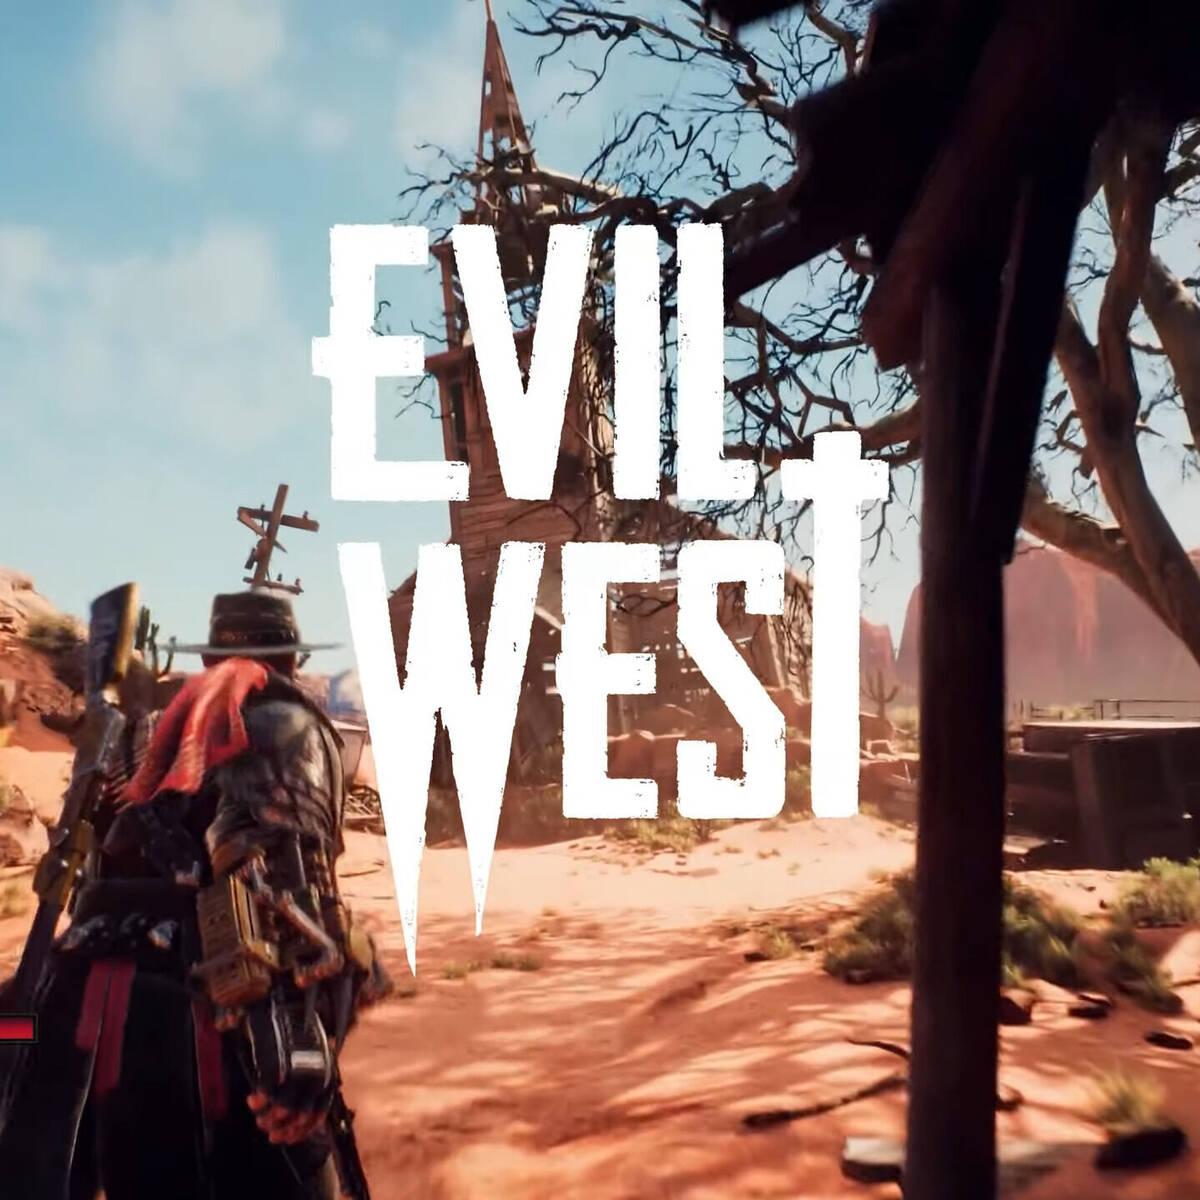 Evil West - Juegos de PS4 y PS5